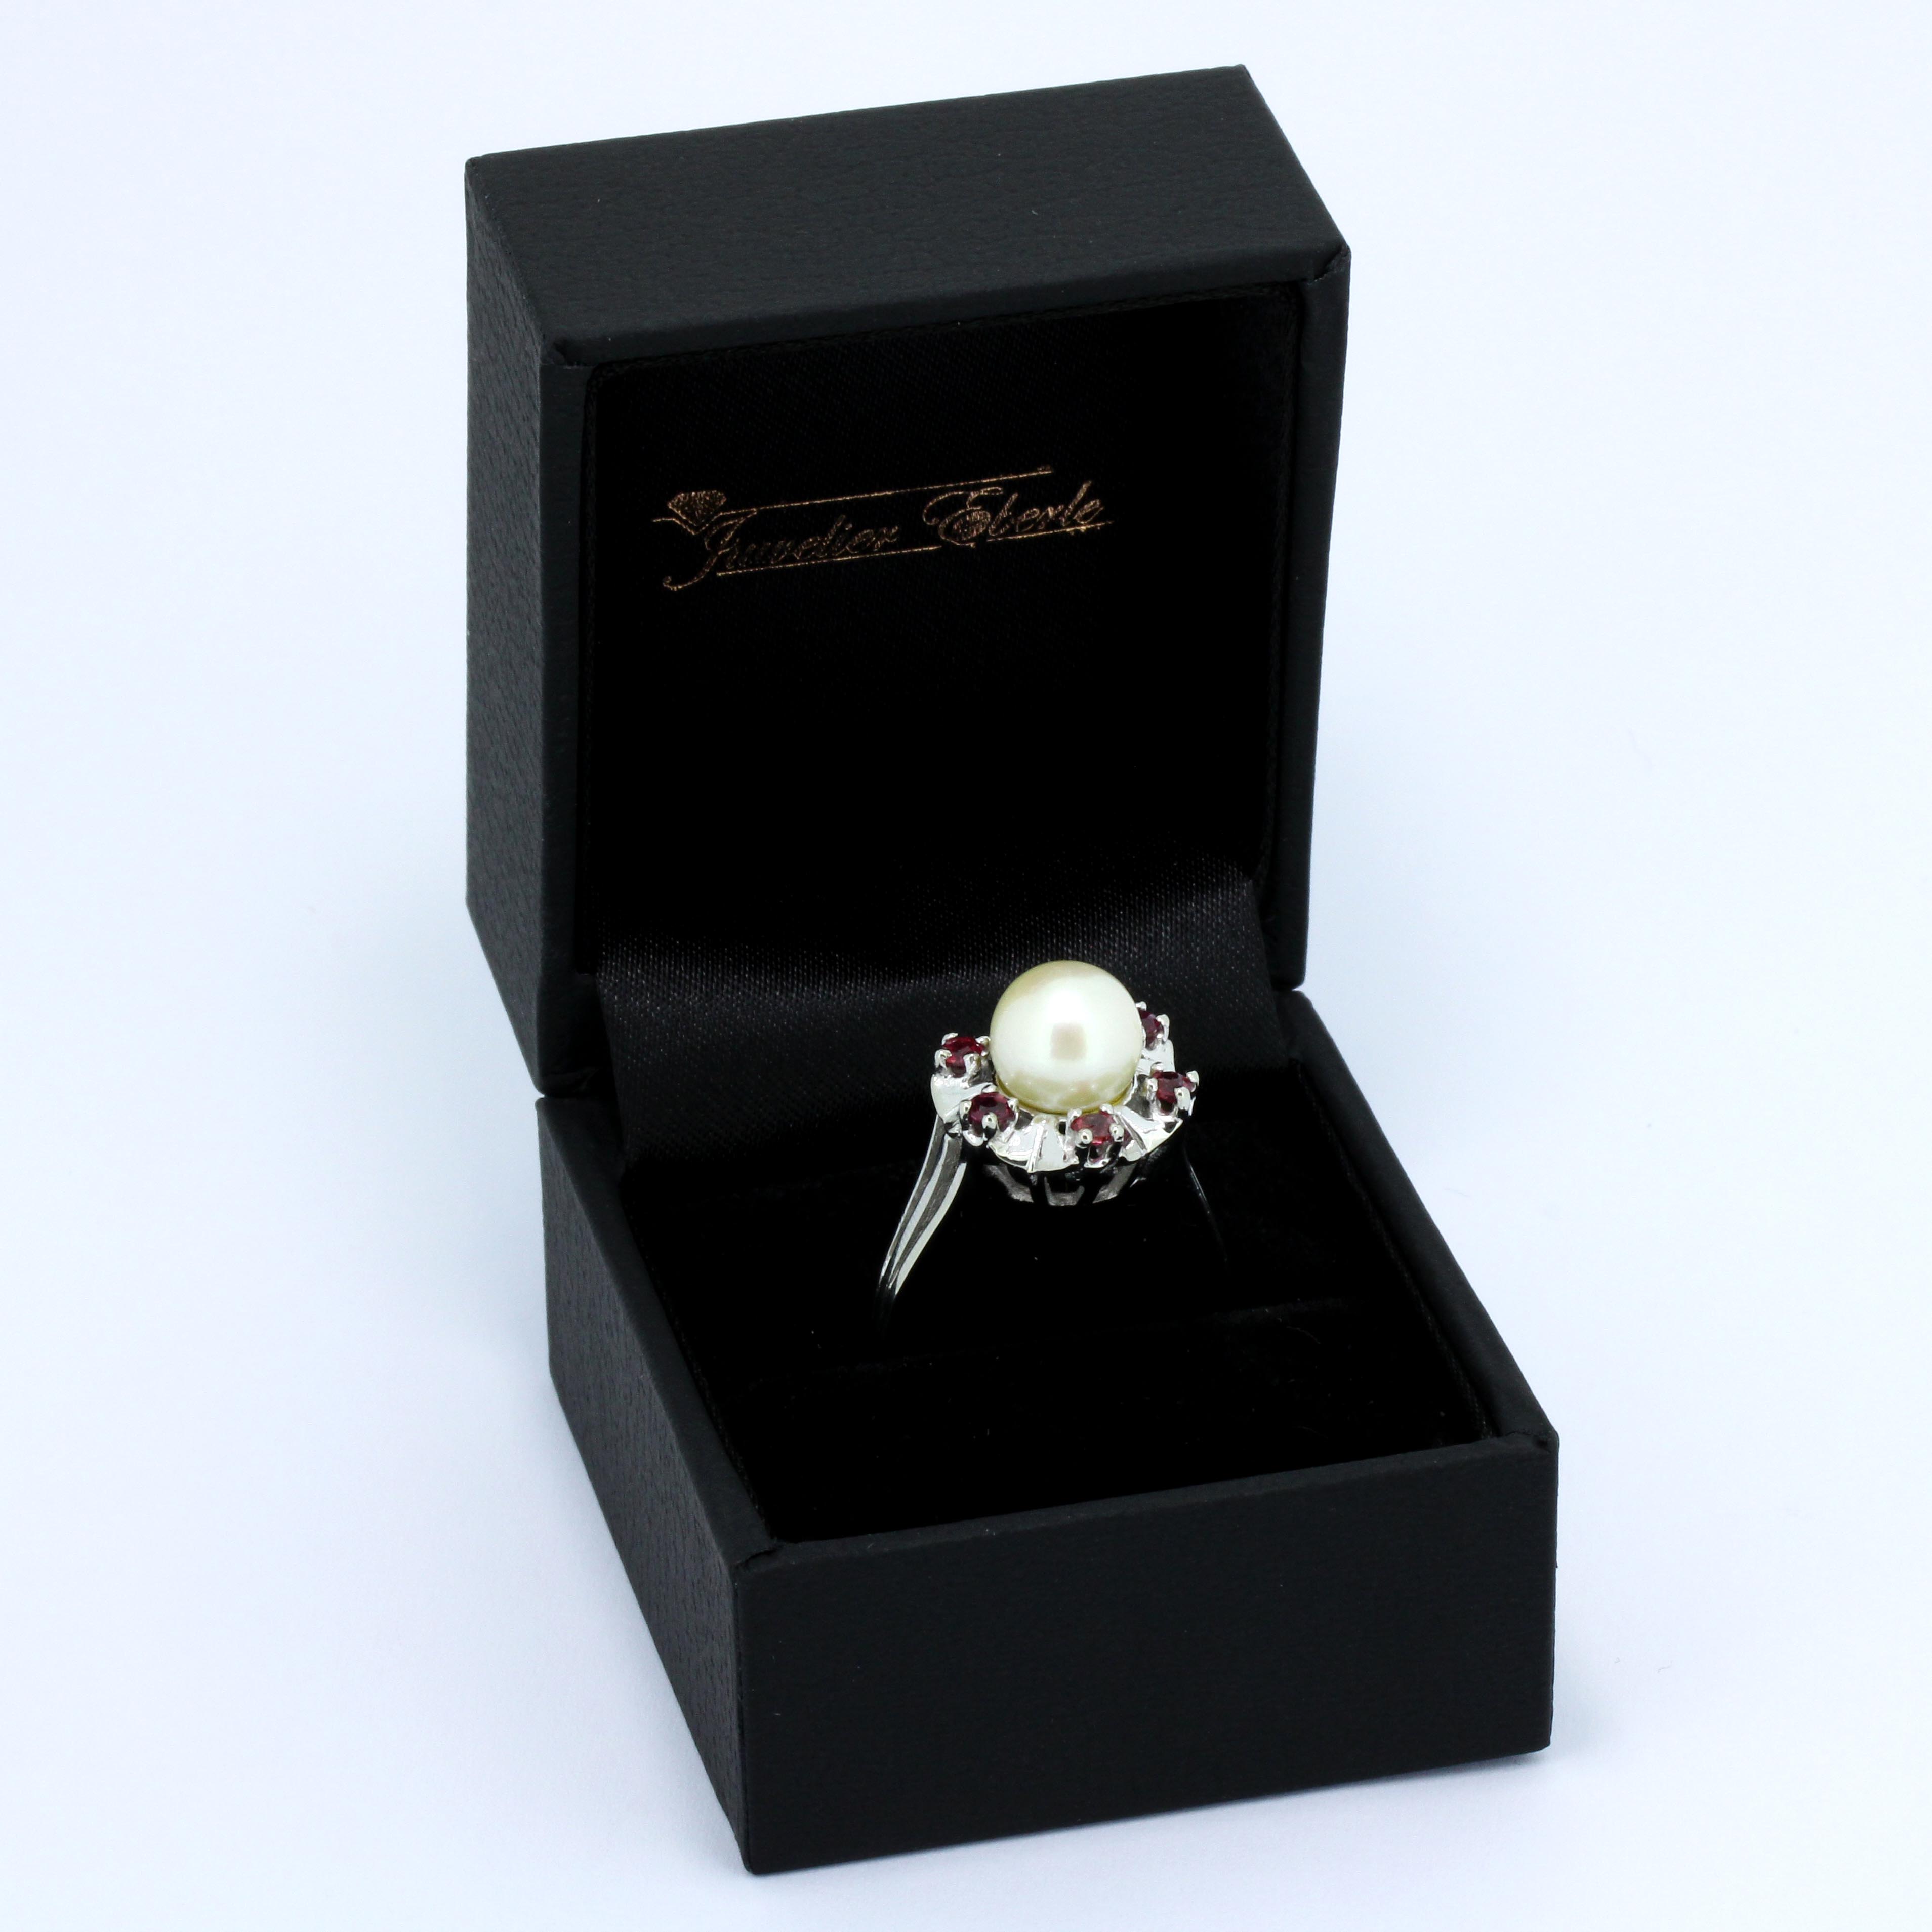 Juwelier 585 Wert Ring Kt Rubin mit Süßwasserperle 14 – 560,- Eberle Gold Perlen